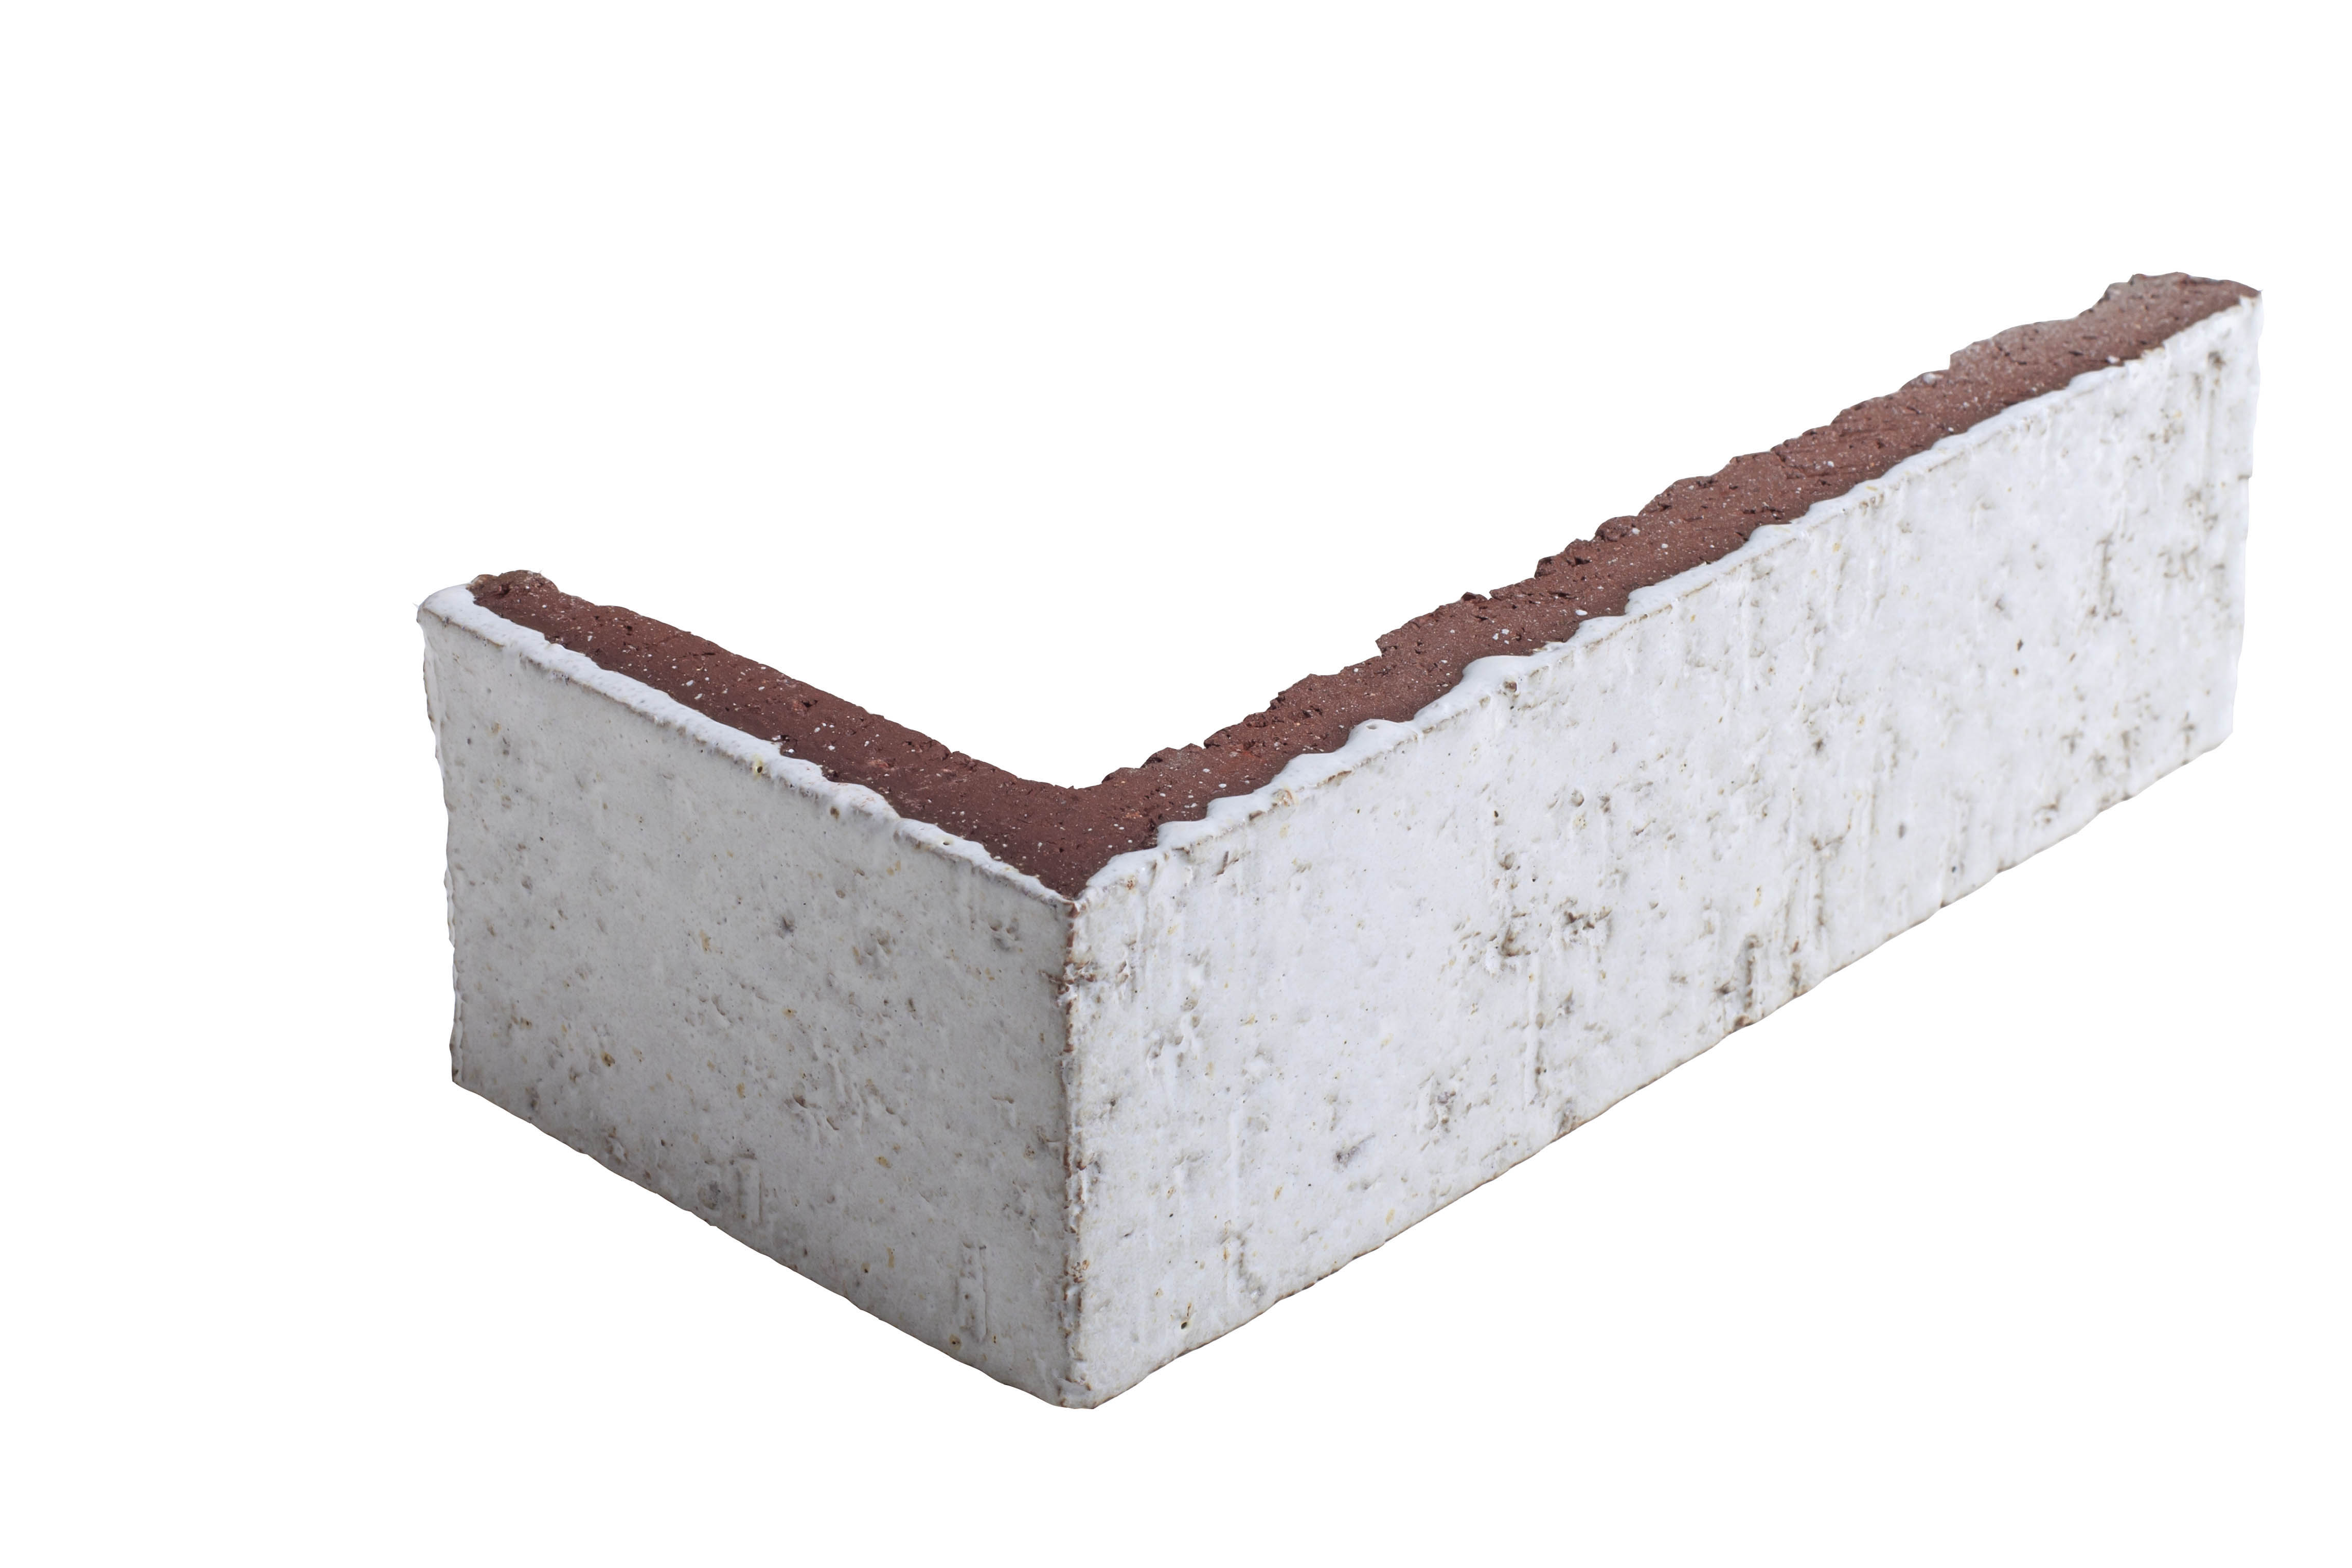 Arto Glazed Brick: Sierra Snow  (Corner 2¼"x7⅝"x⅝")